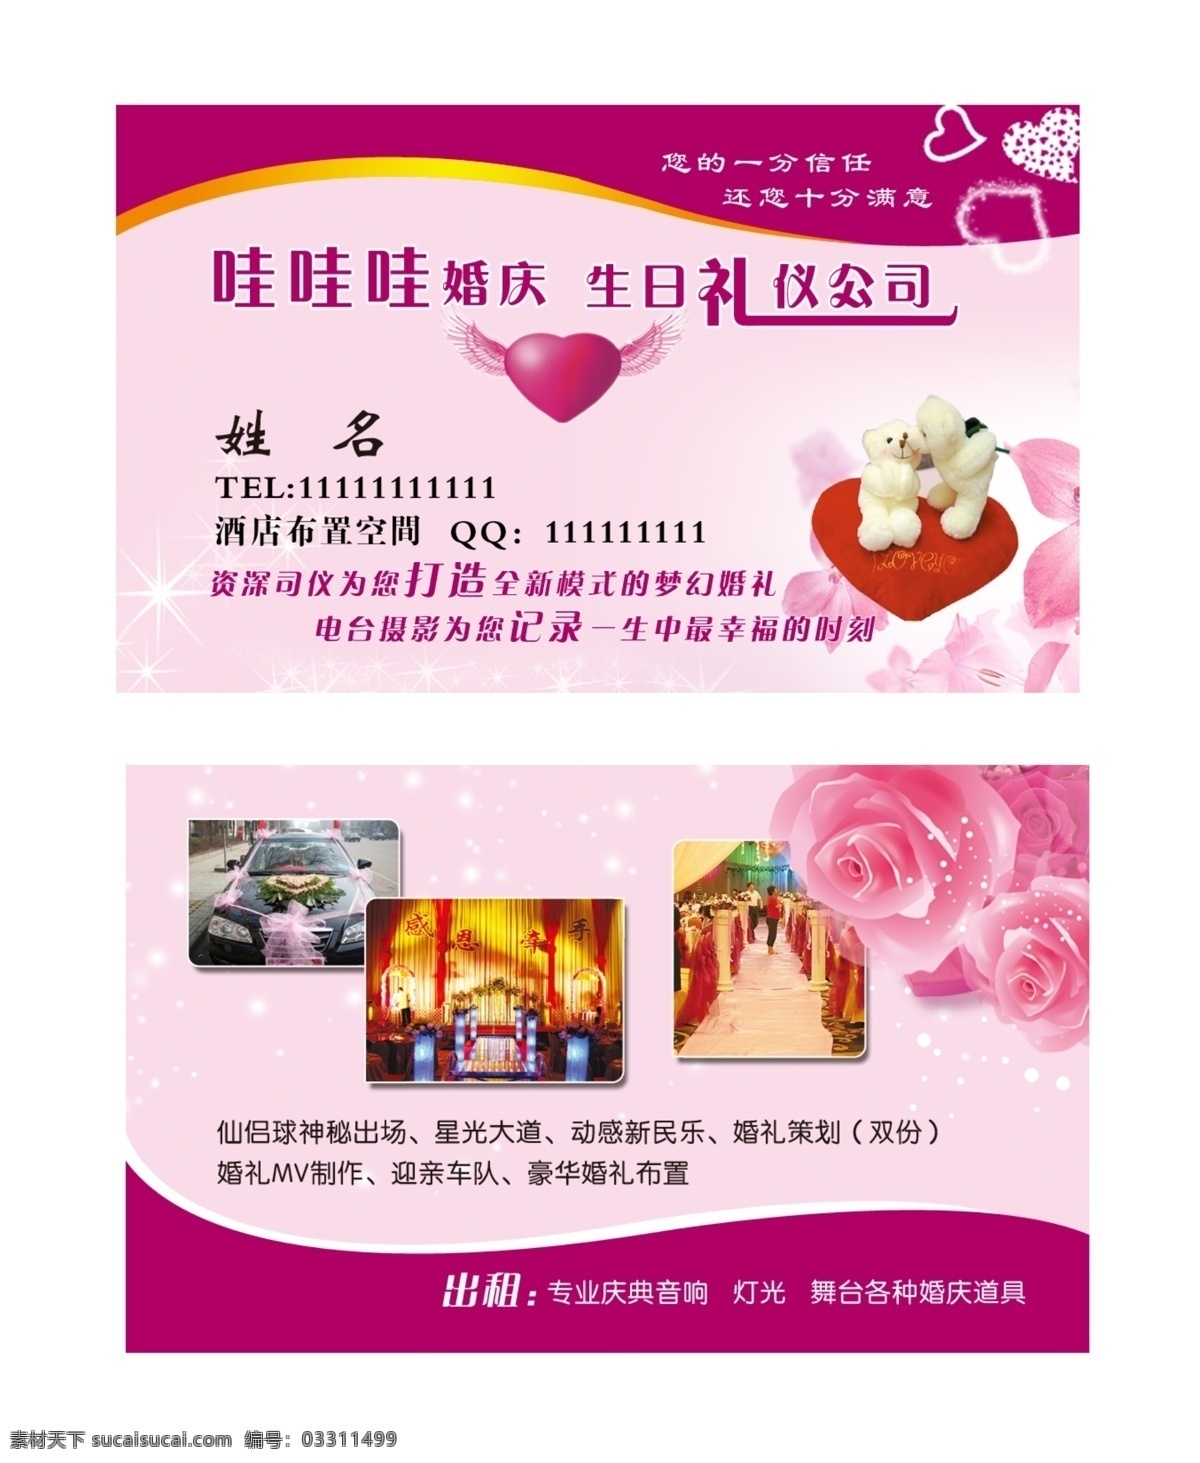 婚庆名片 可爱熊 花朵 心形 粉色底纹 名片卡片 广告设计模板 源文件